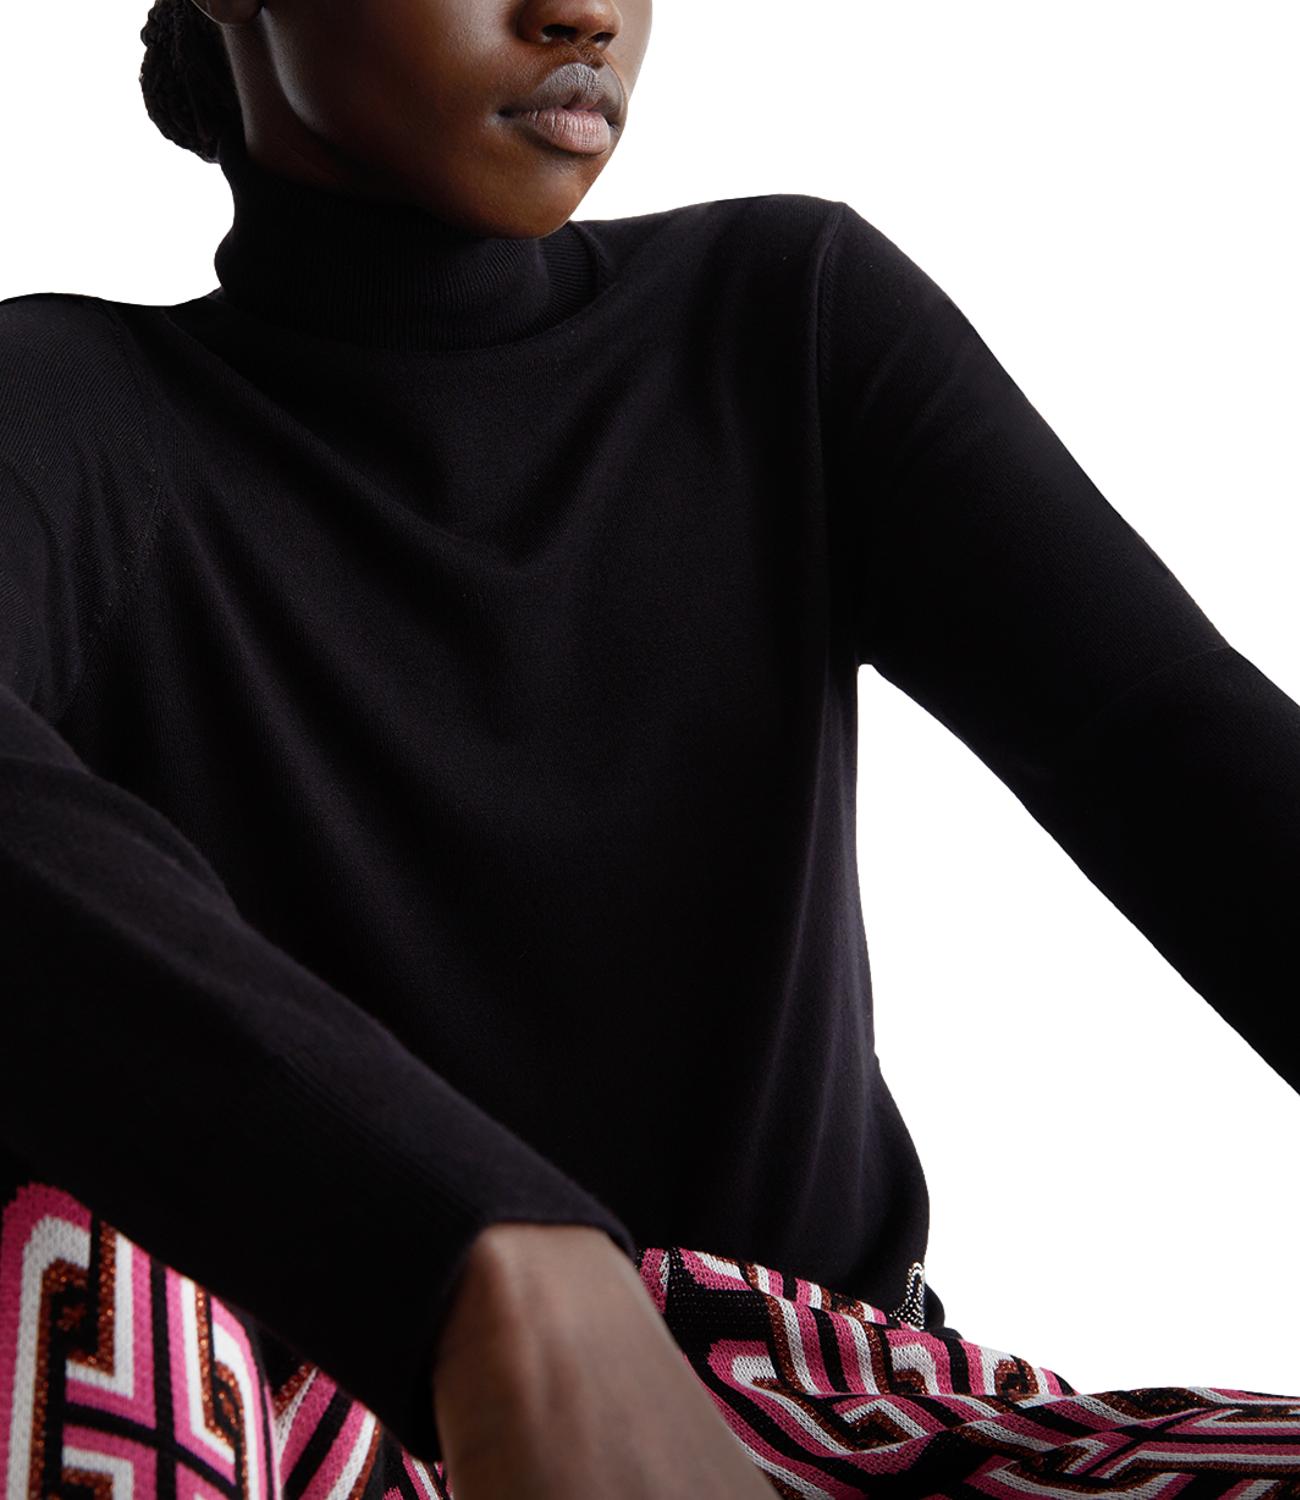 LIU JO women's black turtleneck sweater